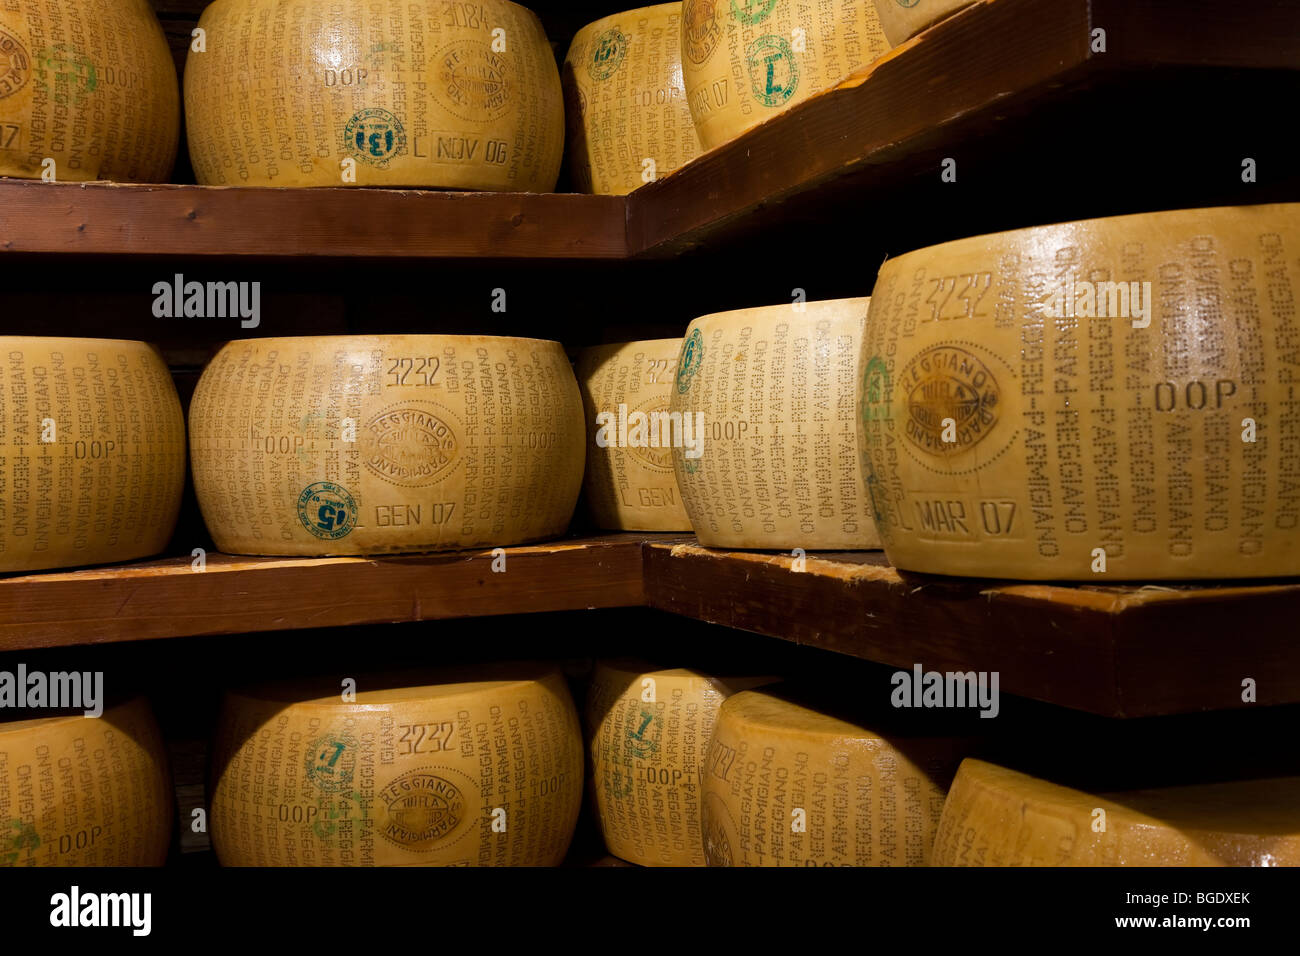 Une sélection de fromage parmesan dans une épicerie fine à Parme, Emilie-Romagne, Italie Banque D'Images